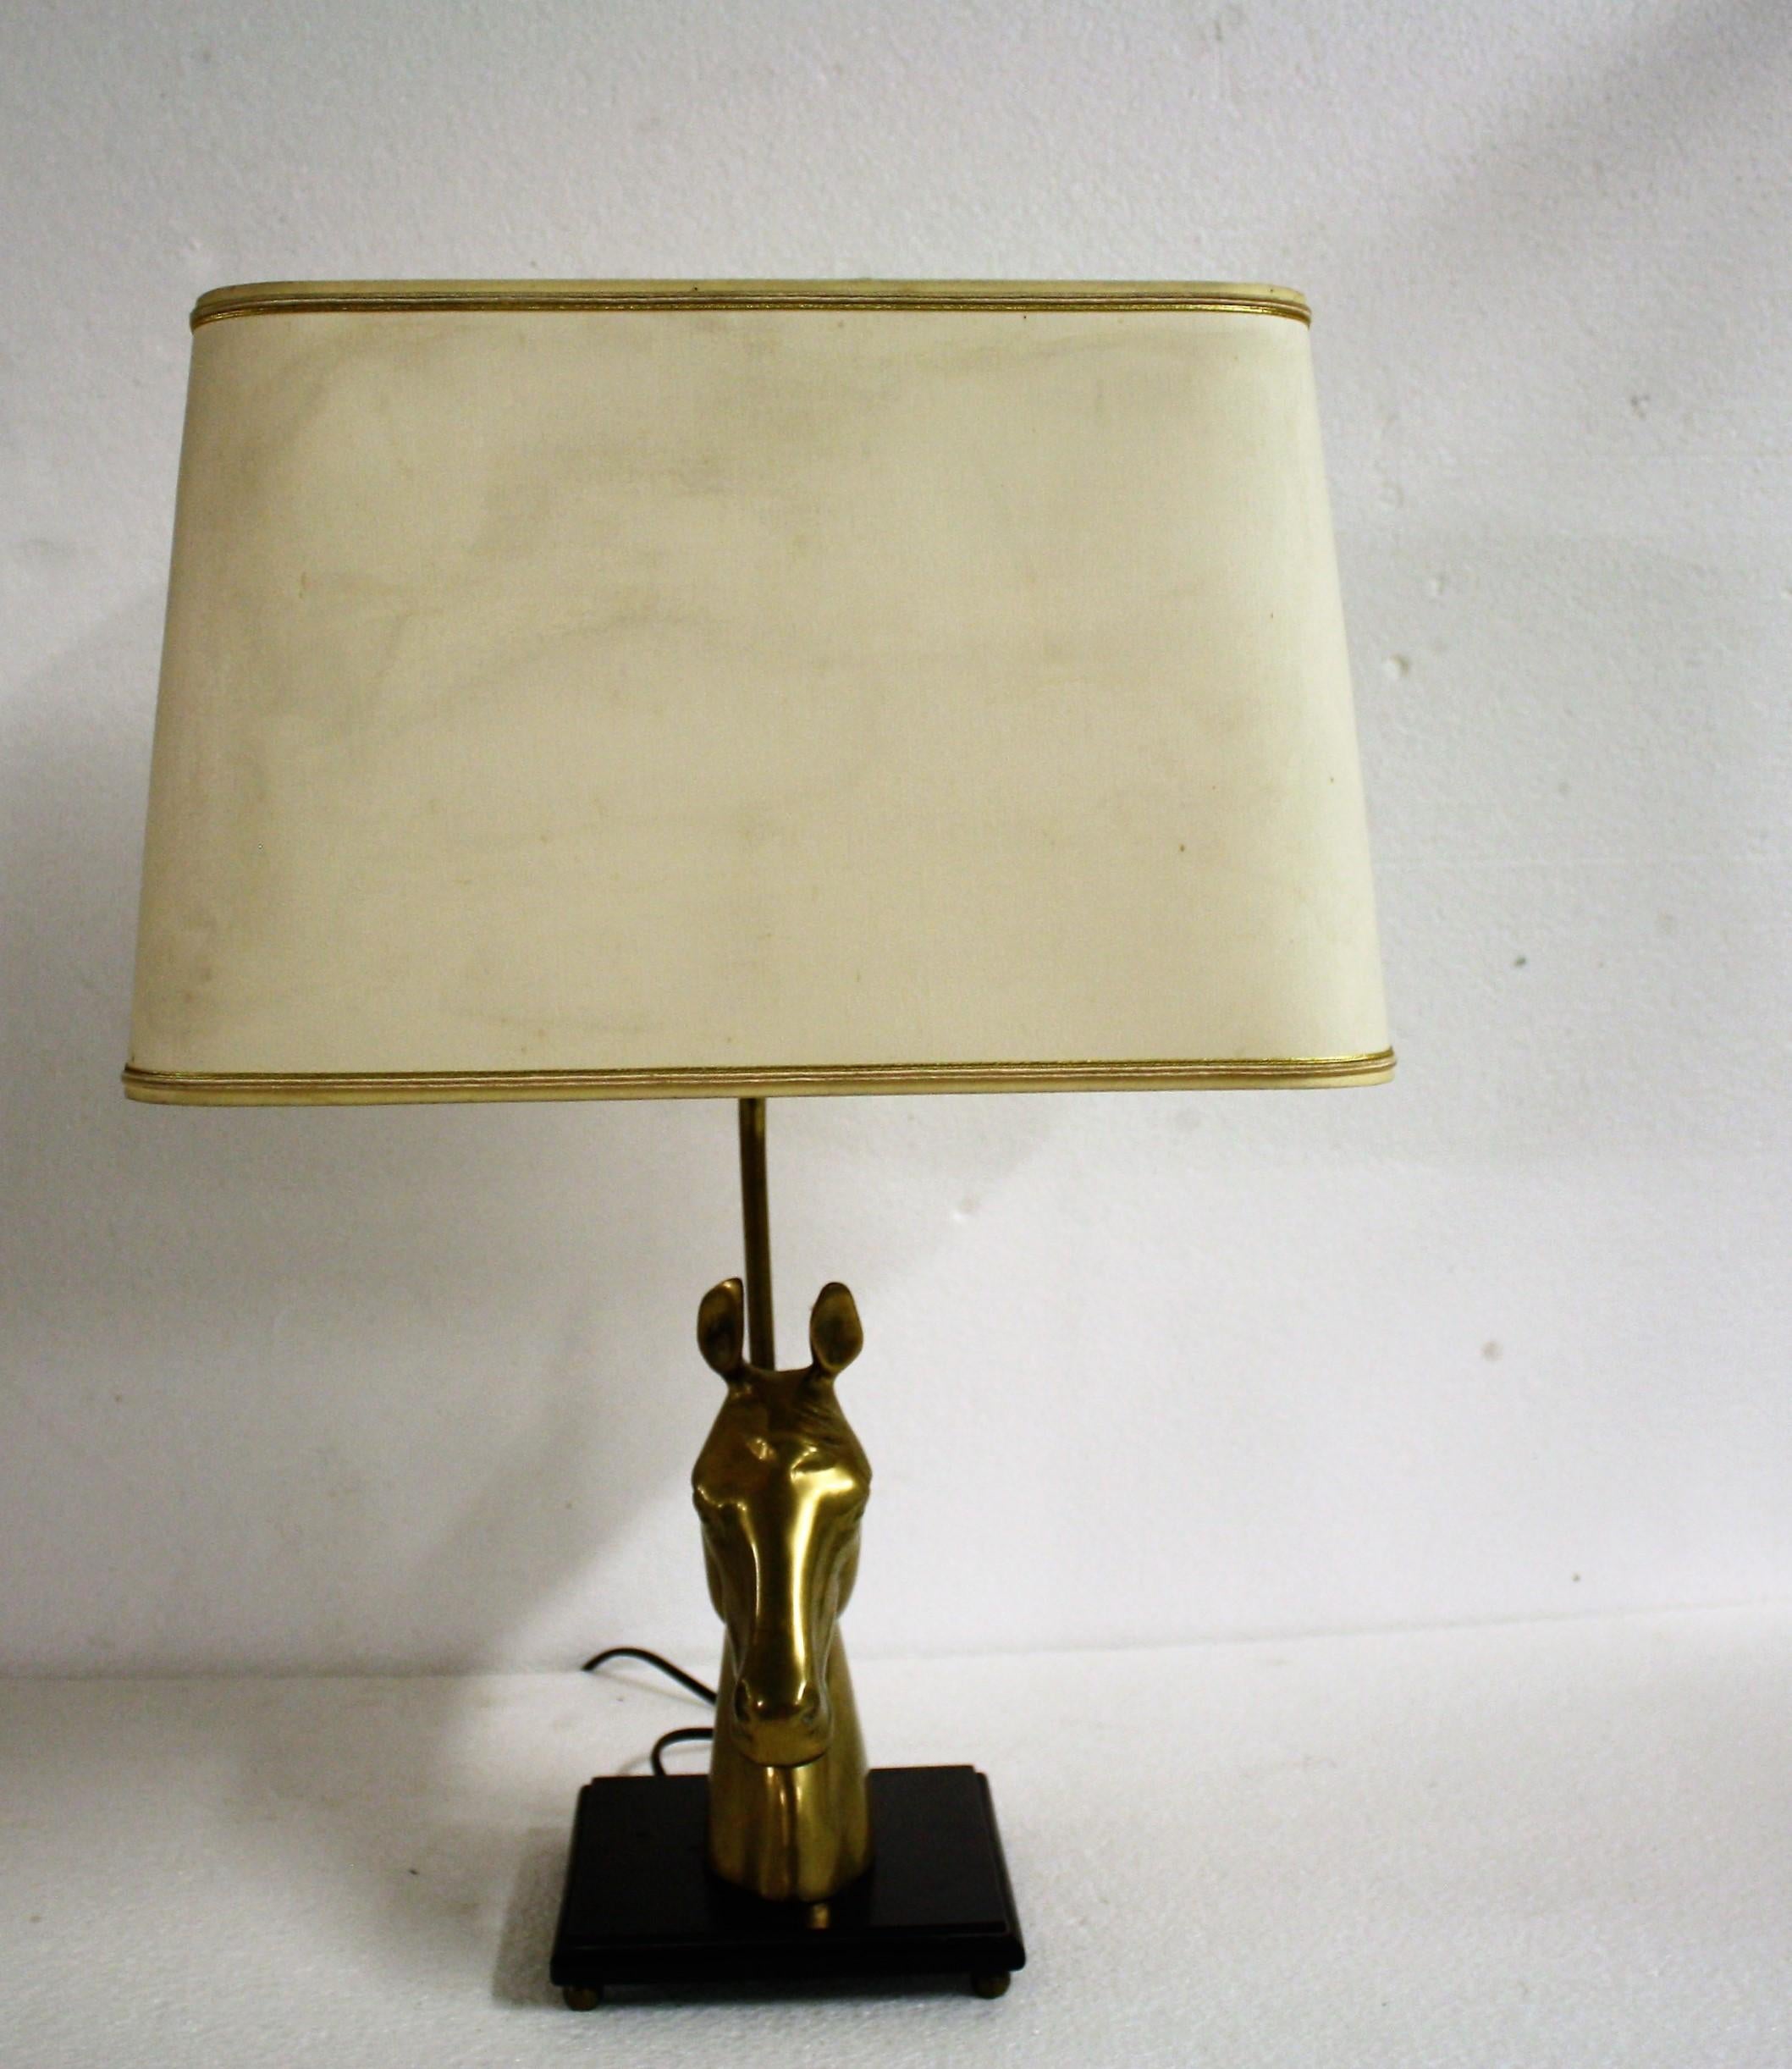 Lampe de table à tête de cheval en laiton dans le style de la Maison Jansen.

La tête de cheval en laiton est montée sur une base en bois et terminée par un abat-jour en tissu d'époque.

Lampe de table élégante avec un attrait luxueux.

La